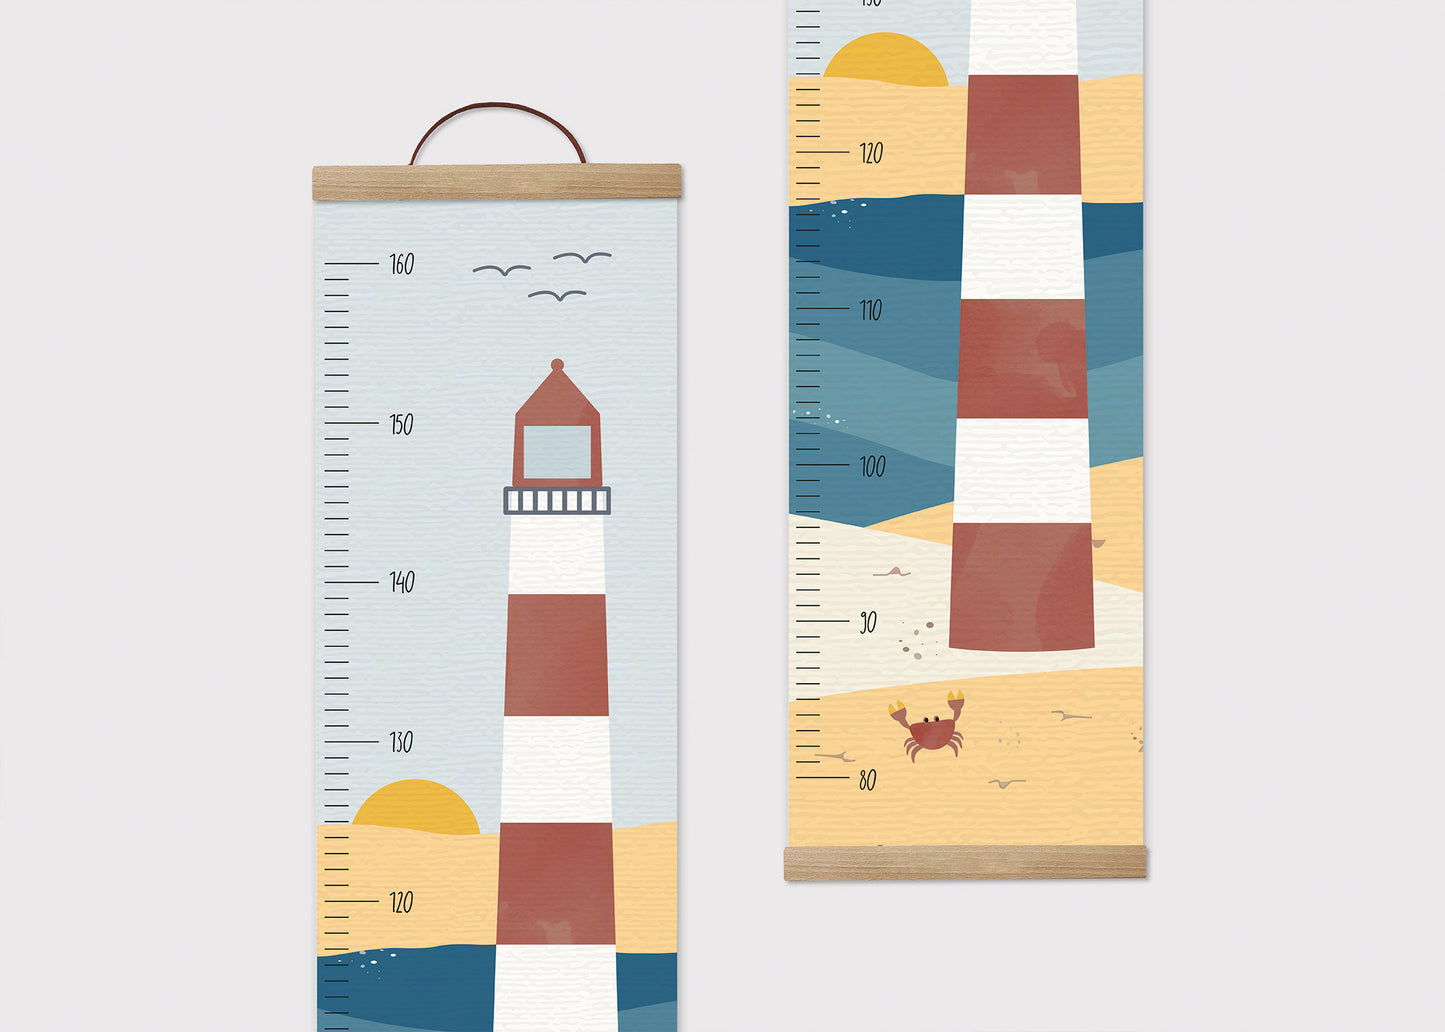 Personalisierte Messlatte für Kinder / Leuchtturm, Nordsee